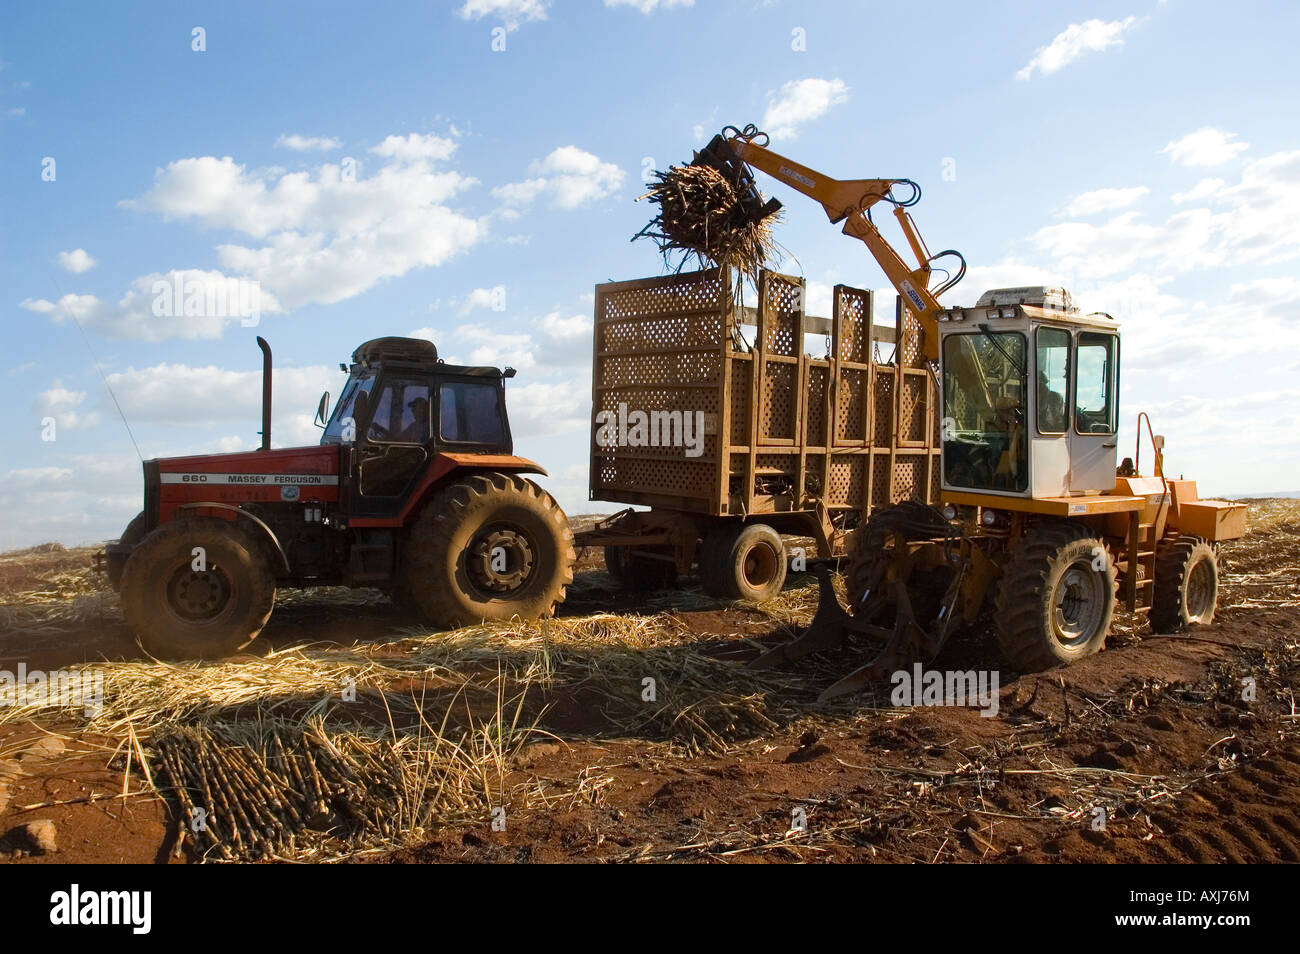 Tractors harvesting cane Stock Photo